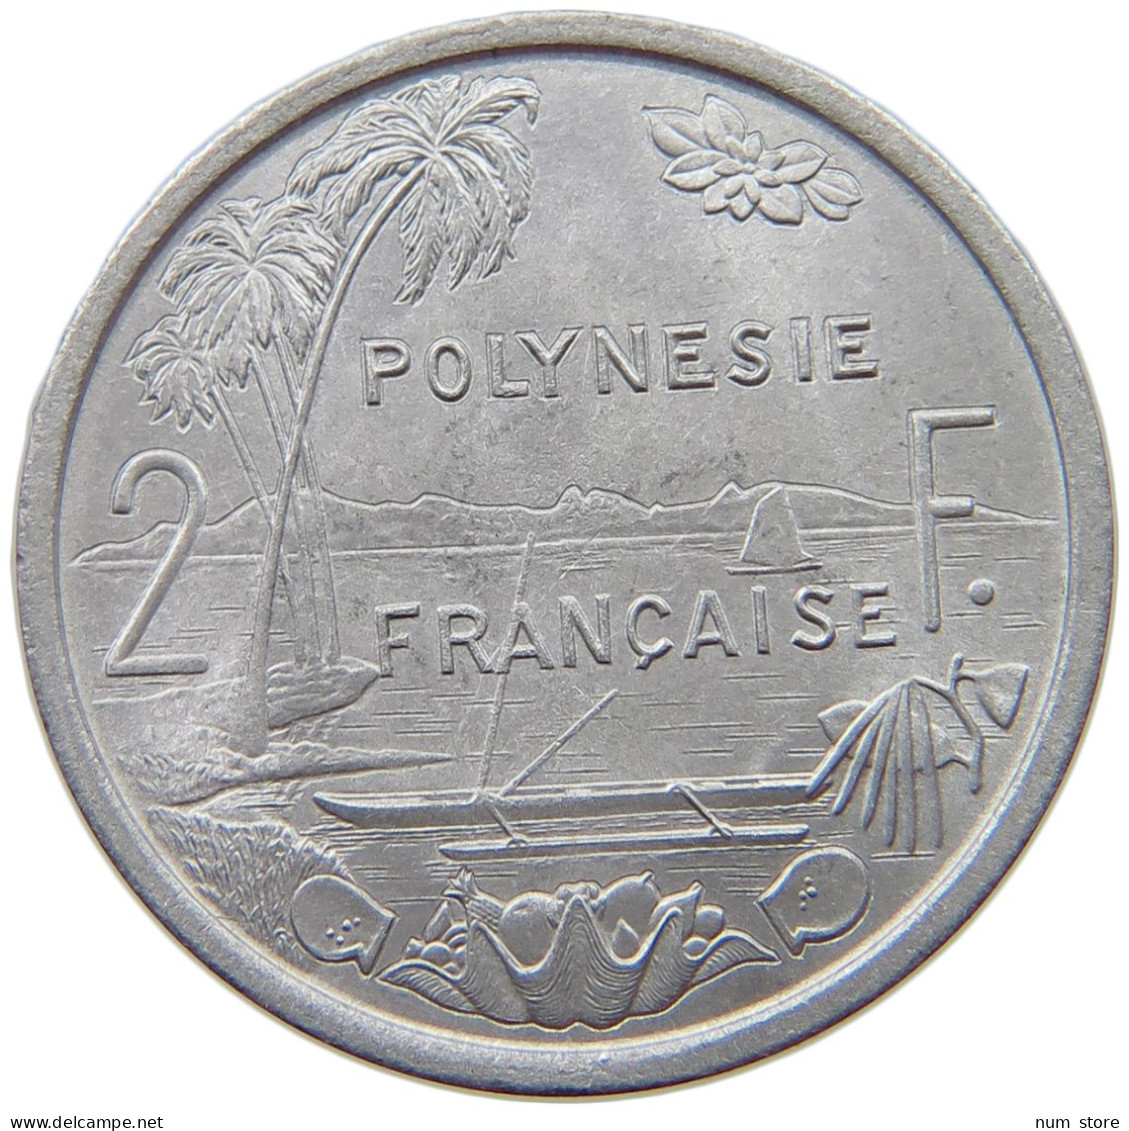 POLYNESIA 2 FRANCS 1973  #a022 0159 - Polynésie Française